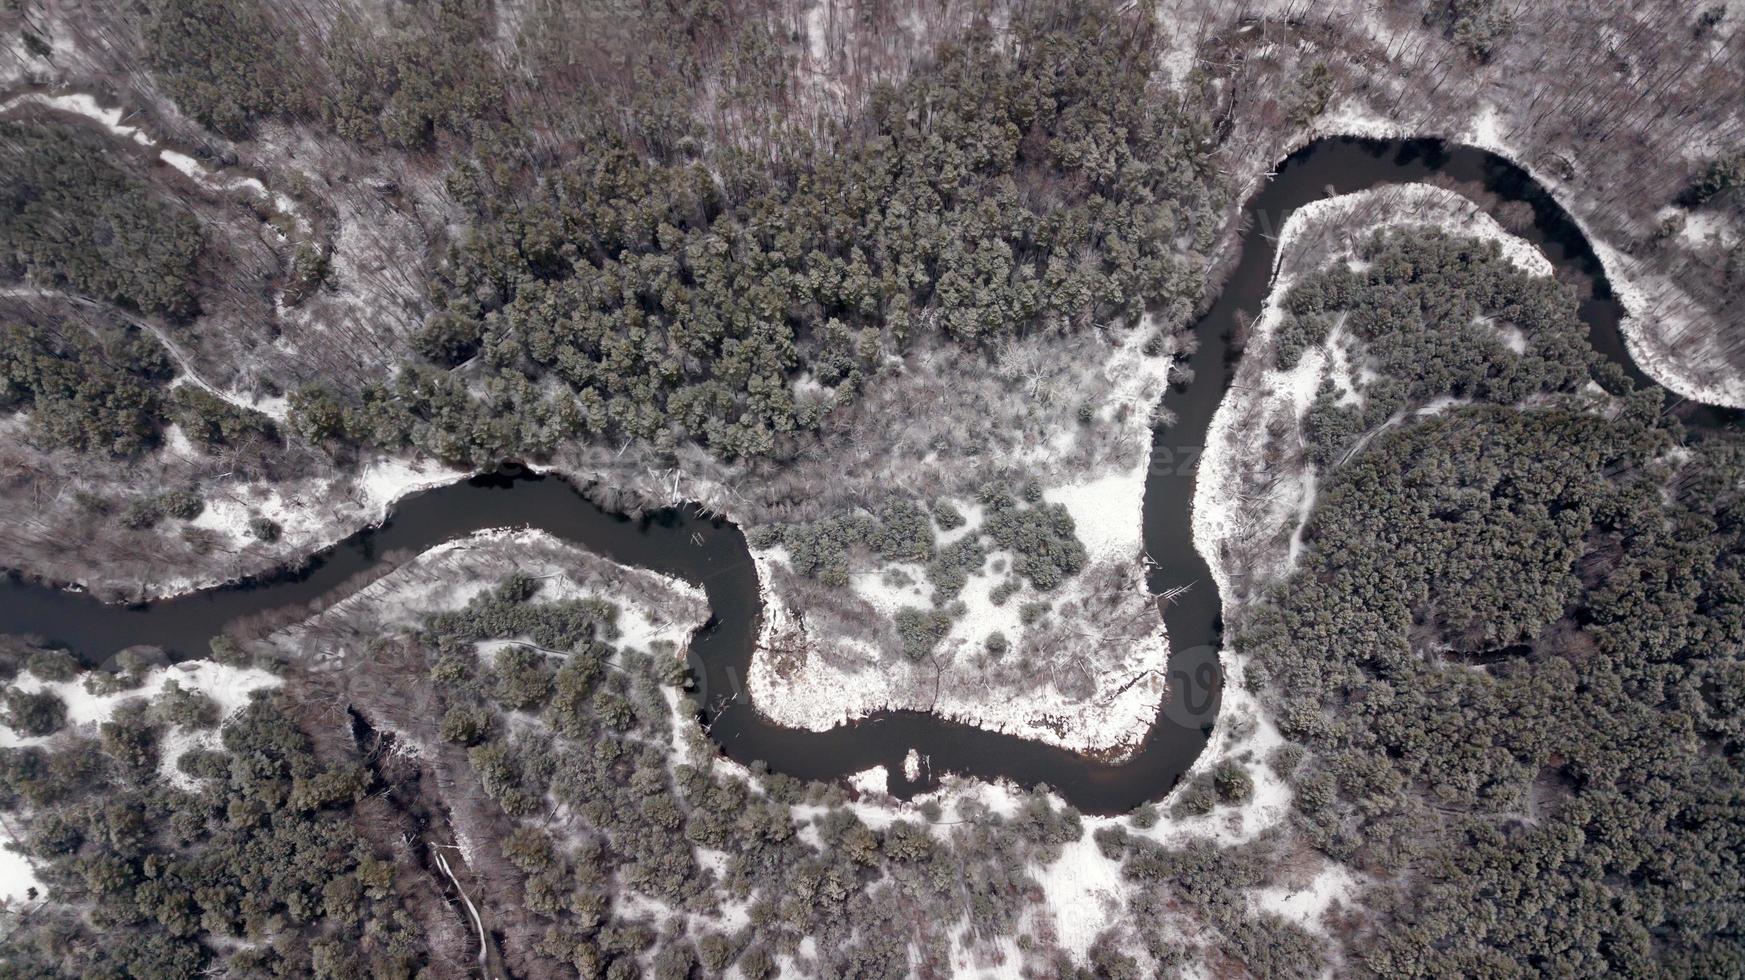 río en el bosque de invierno. fotografía aérea con cuadricóptero foto